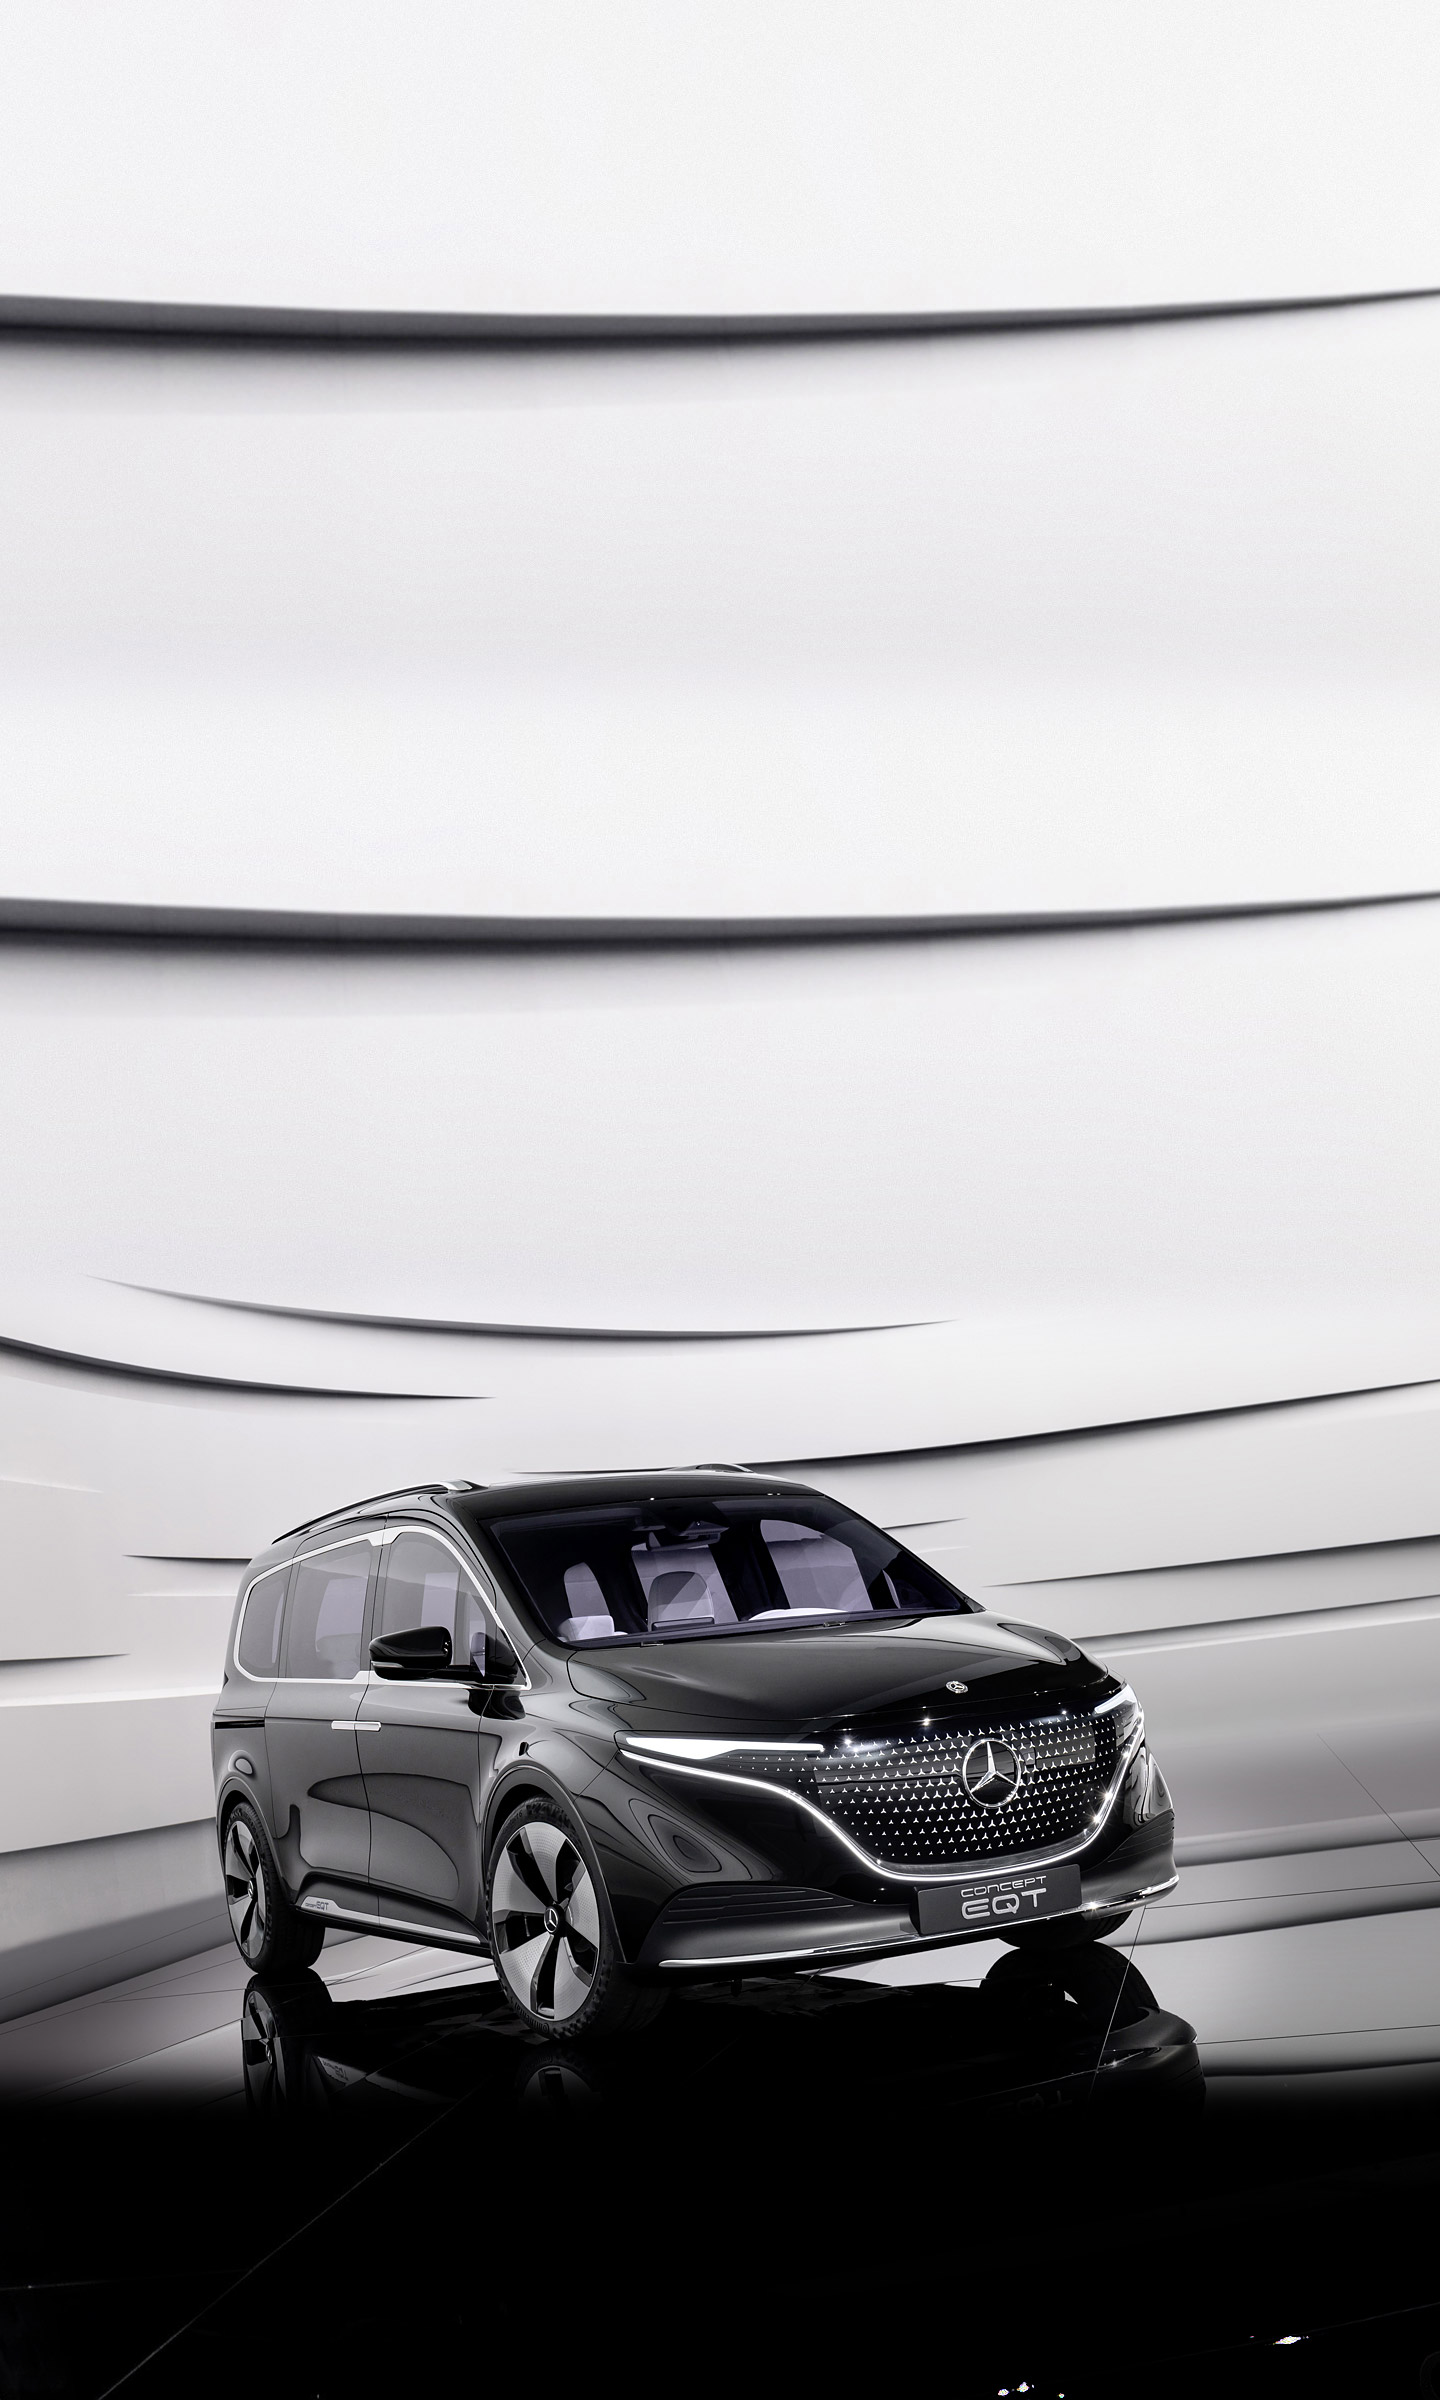  2021 Mercedes-Benz EQT Concept Wallpaper.